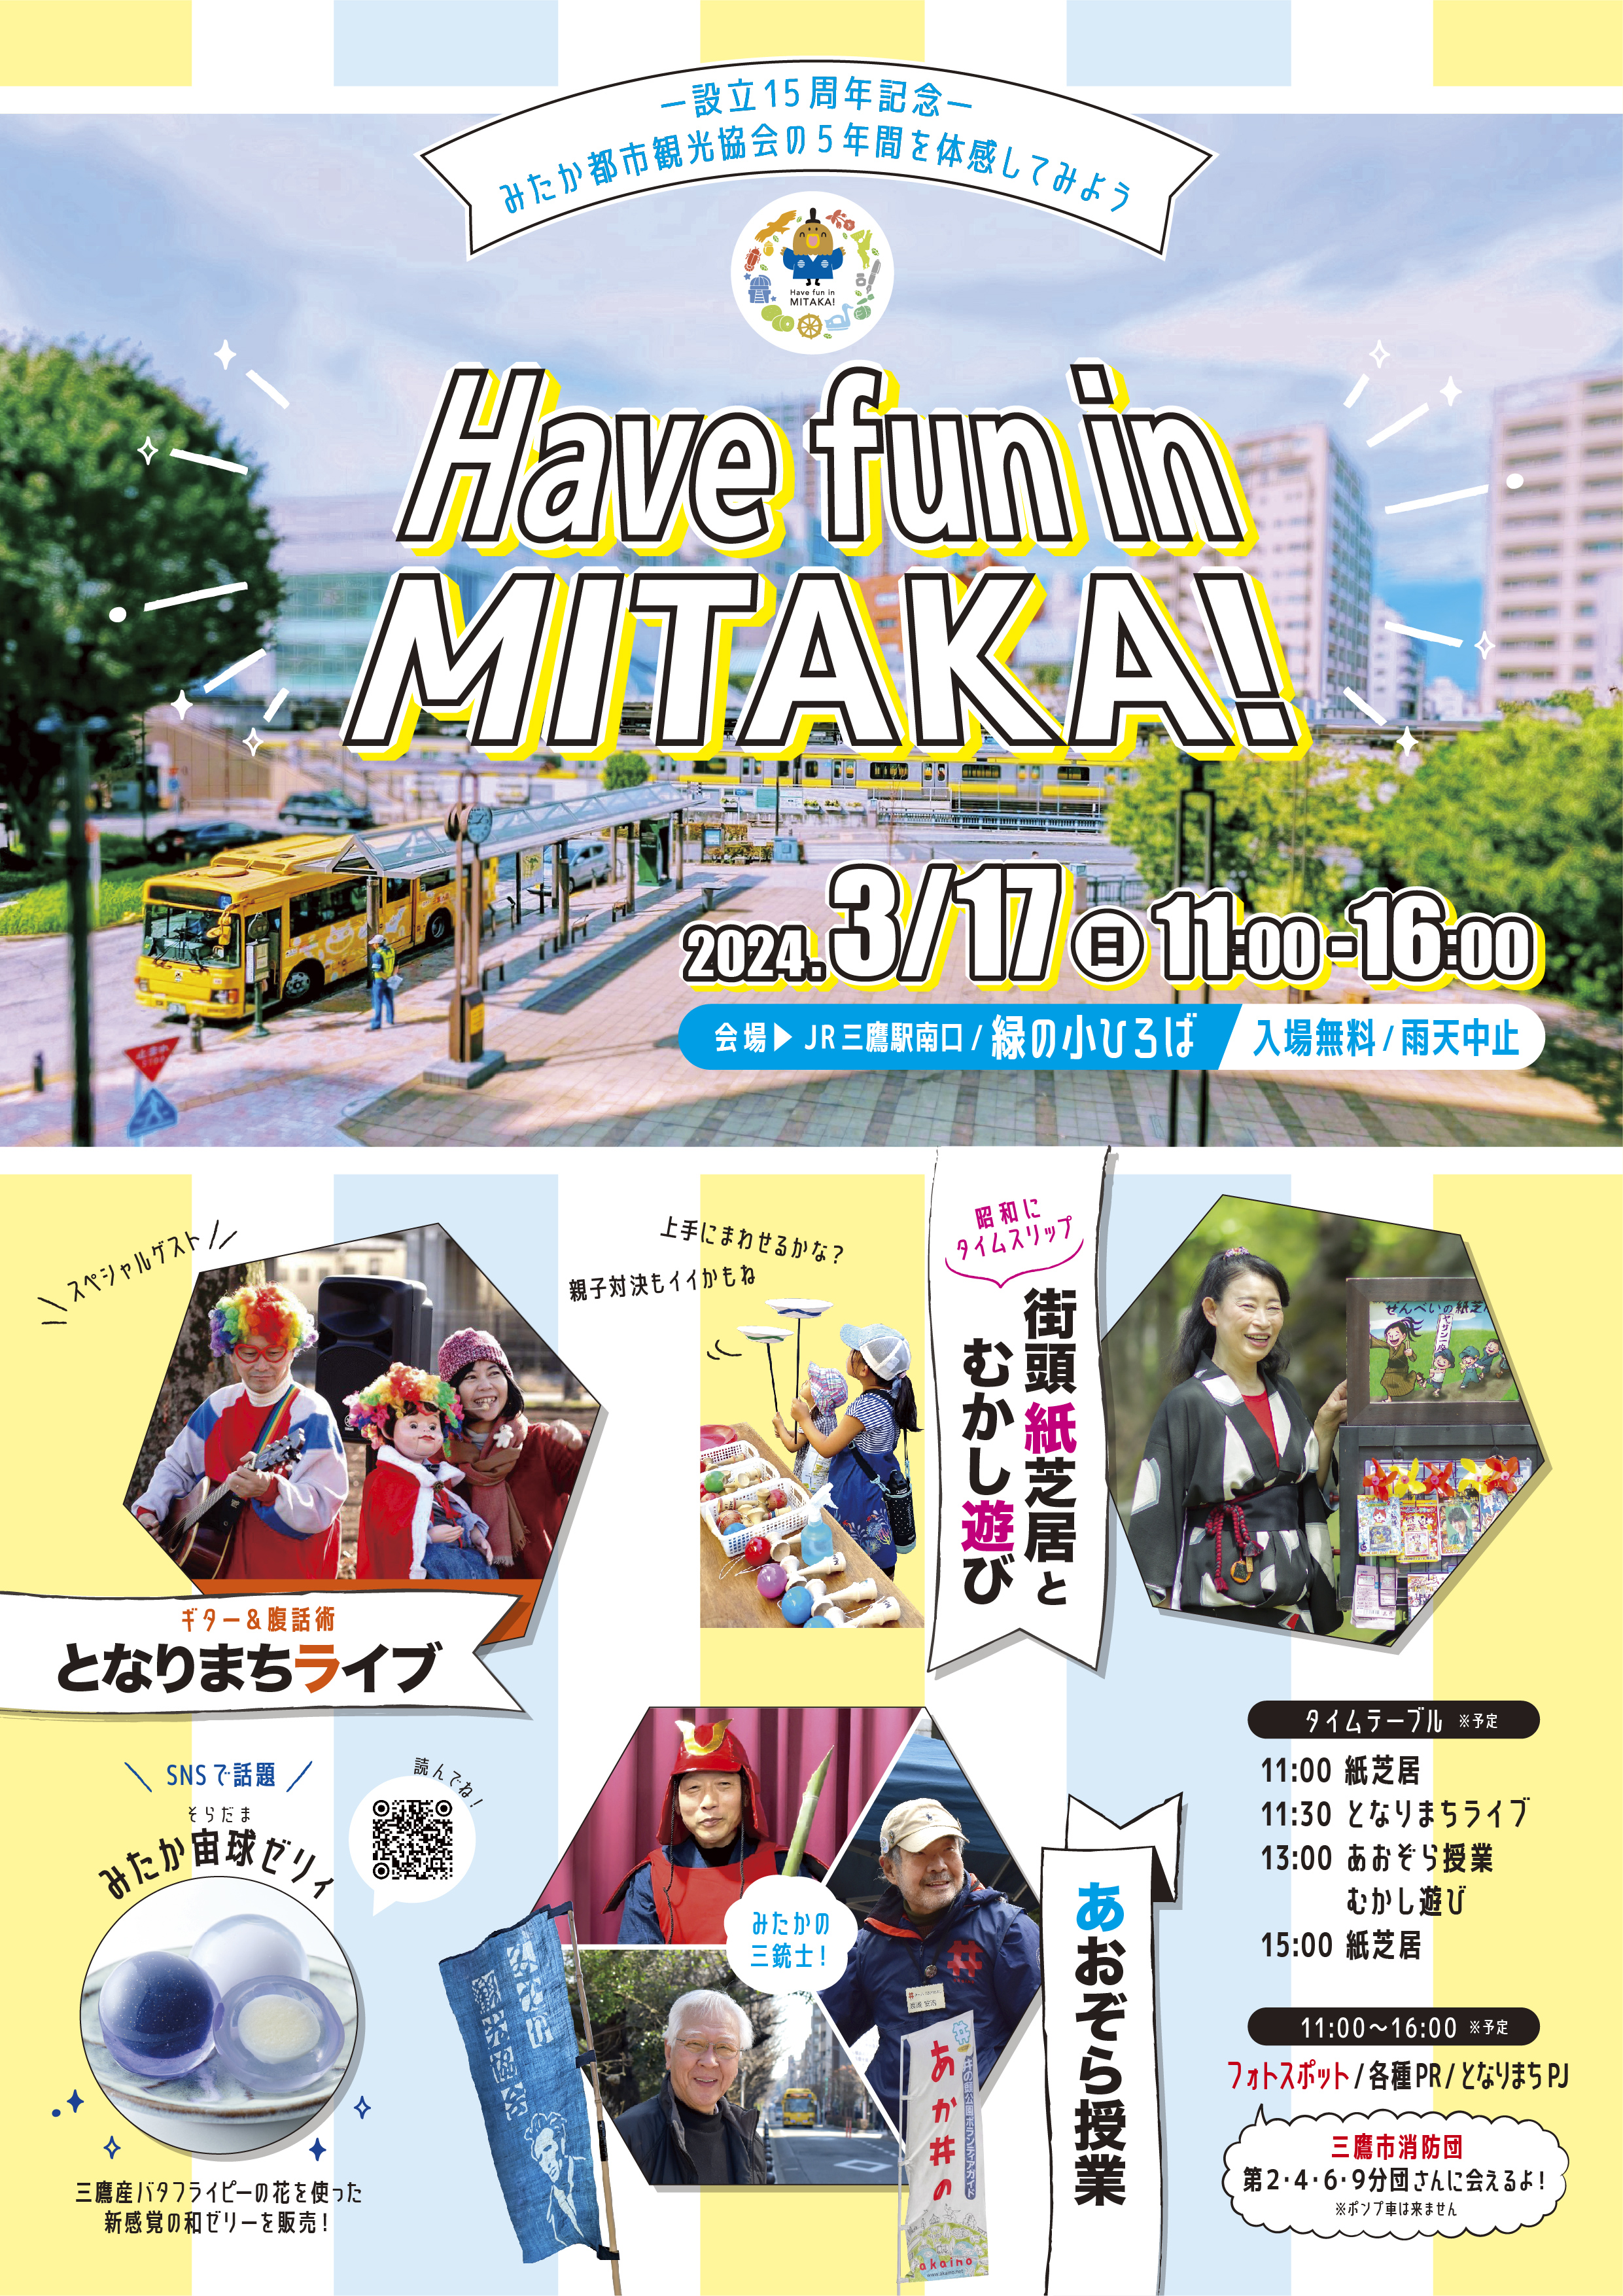 Have fun in mitakaちらし